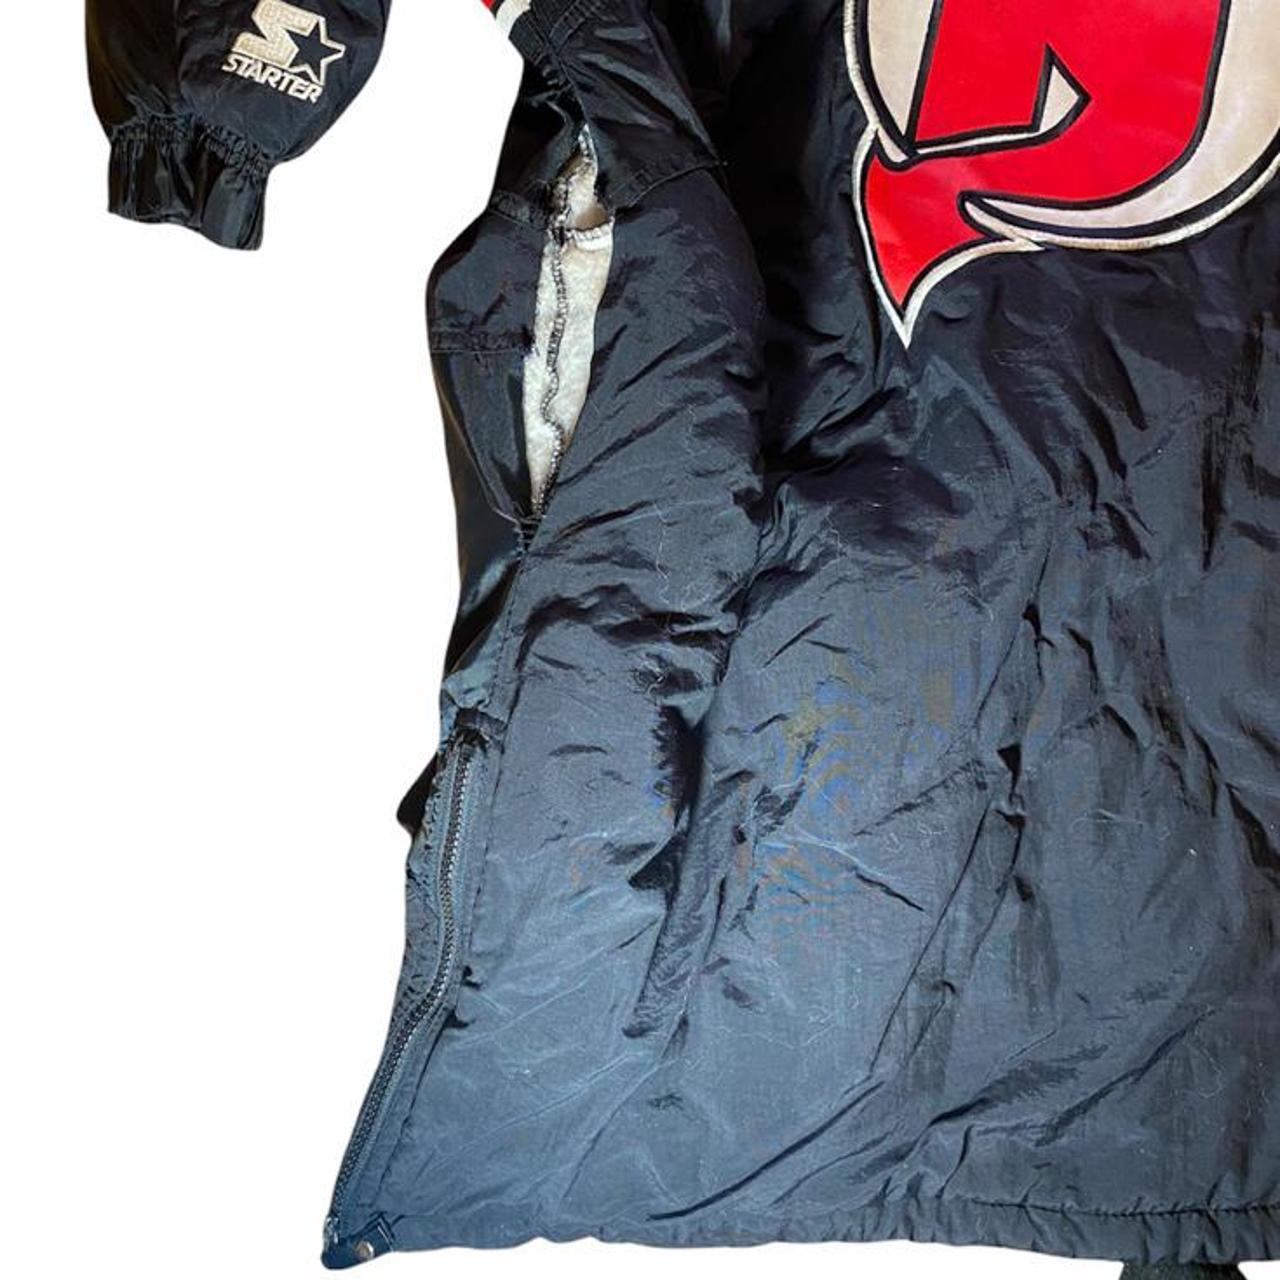 New Jersey Devils NHL Starter Jacket Size Small 